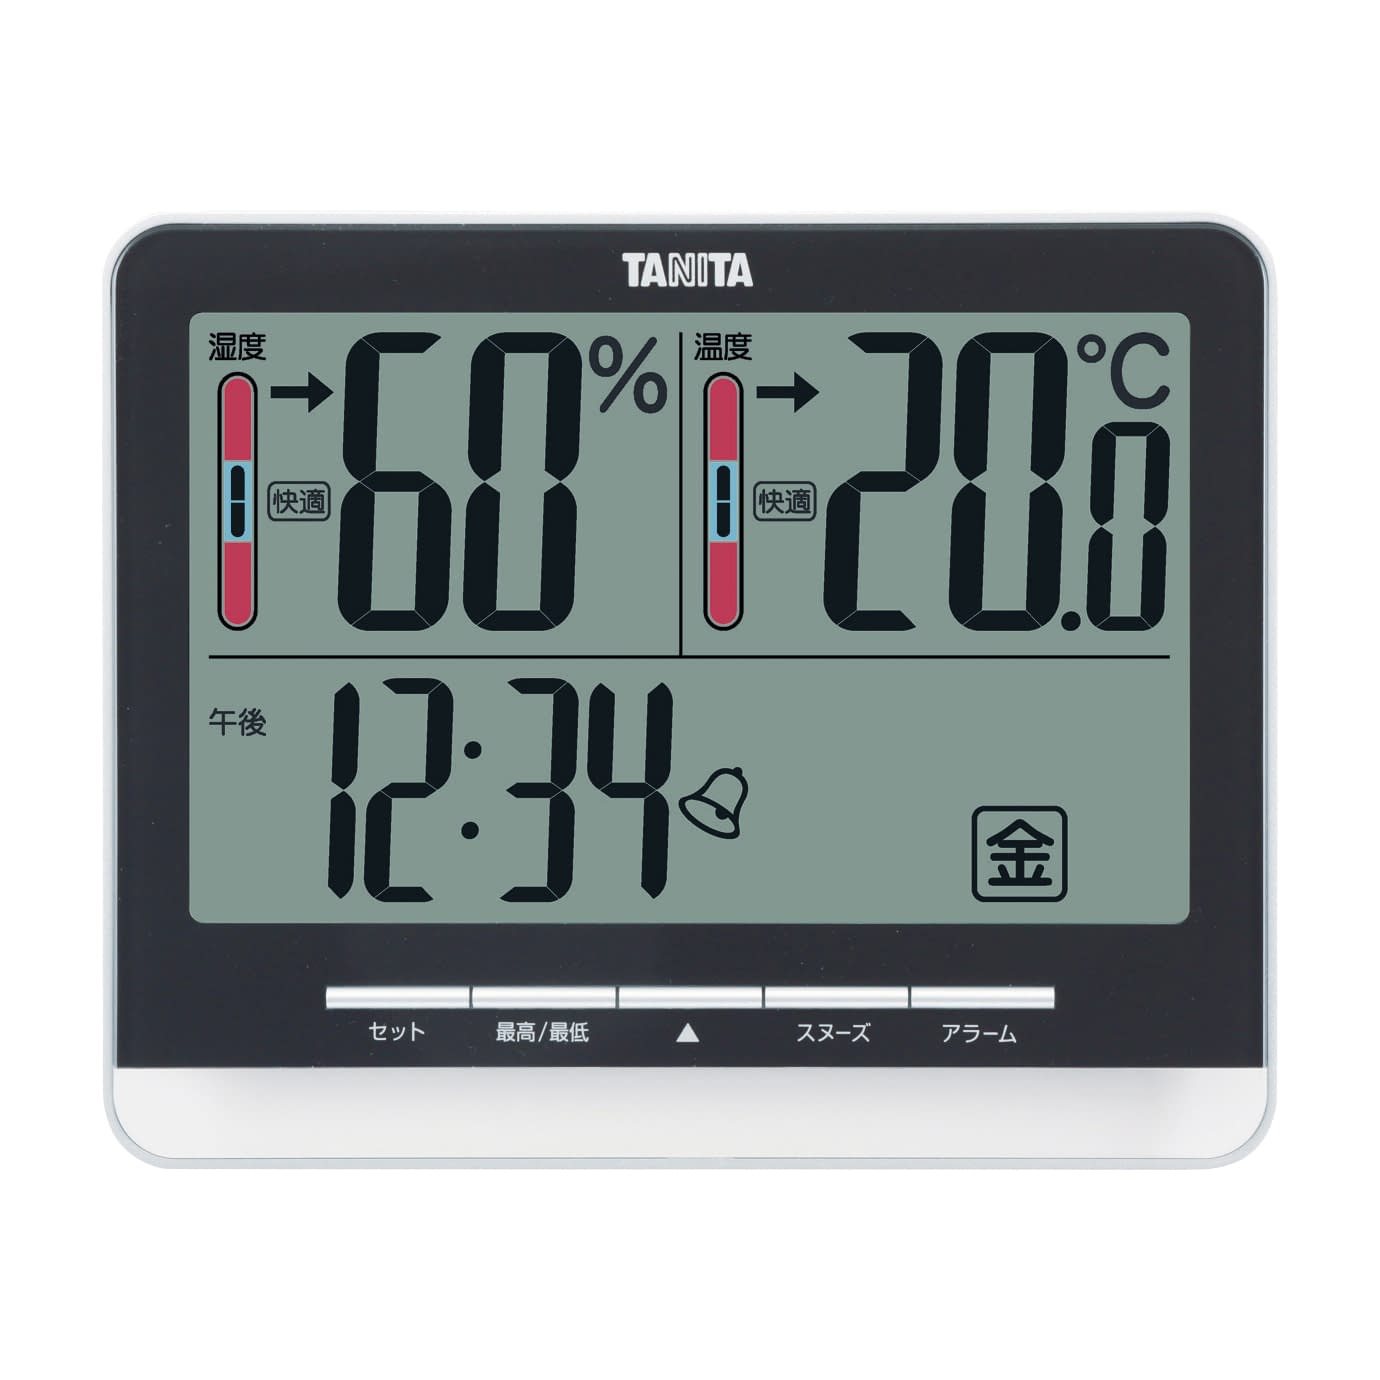 (24-3895-00)デジタル温湿度計 TT-538(ﾌﾞﾗｯｸ) ﾃﾞｼﾞﾀﾙｵﾝｼﾂﾄﾞｹｲ(タニタ)【1個単位】【2019年カタログ商品】